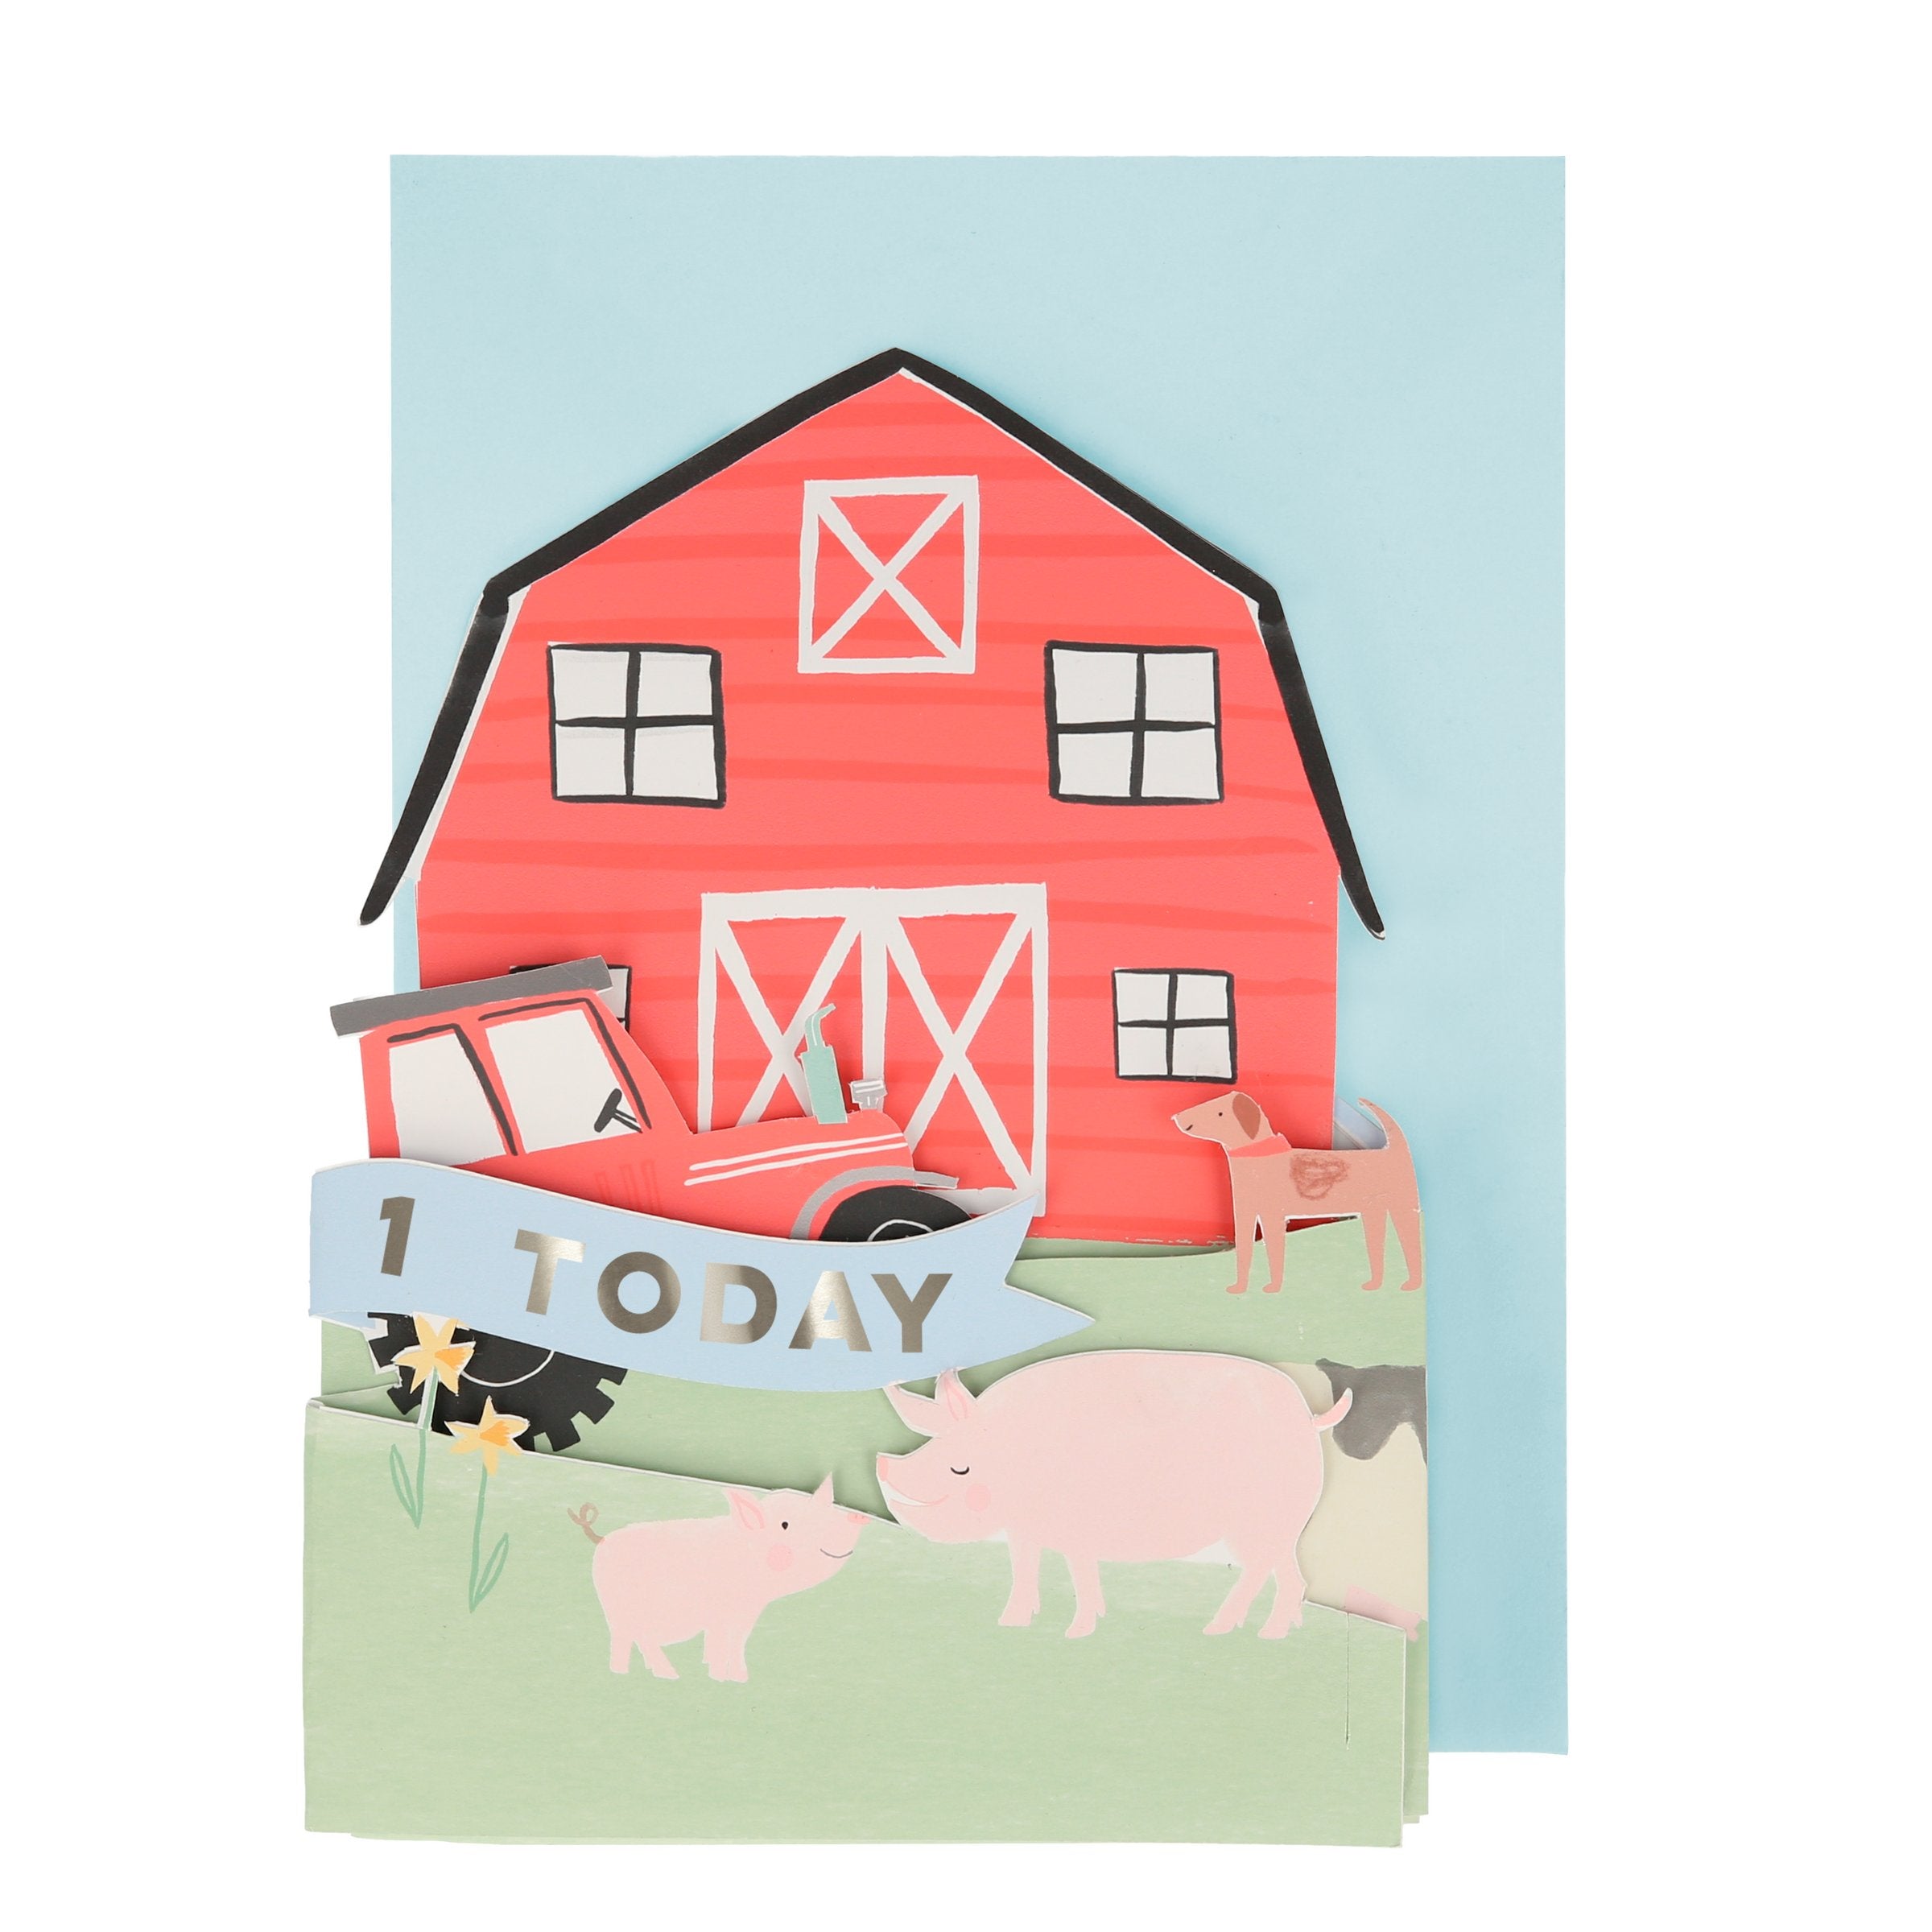 On The Farm 3D Scene Birthday Card